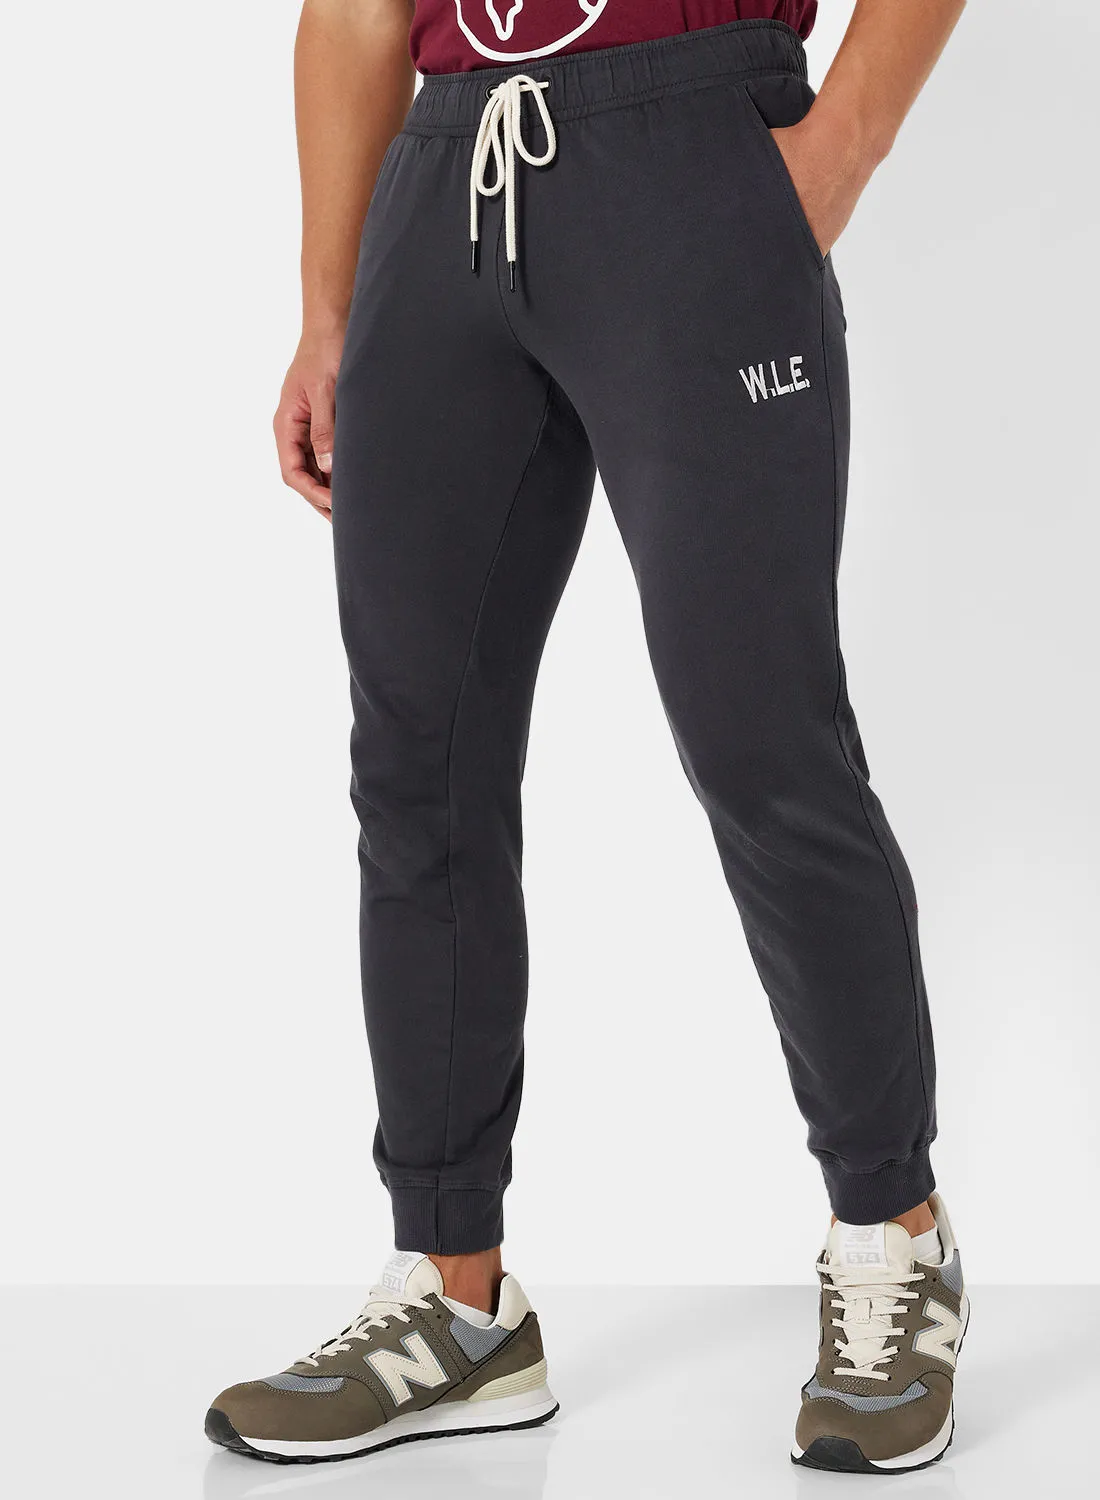 Sivvi x D'Atelier Eco-Friendly Essential Sweatpants Charcoal Grey